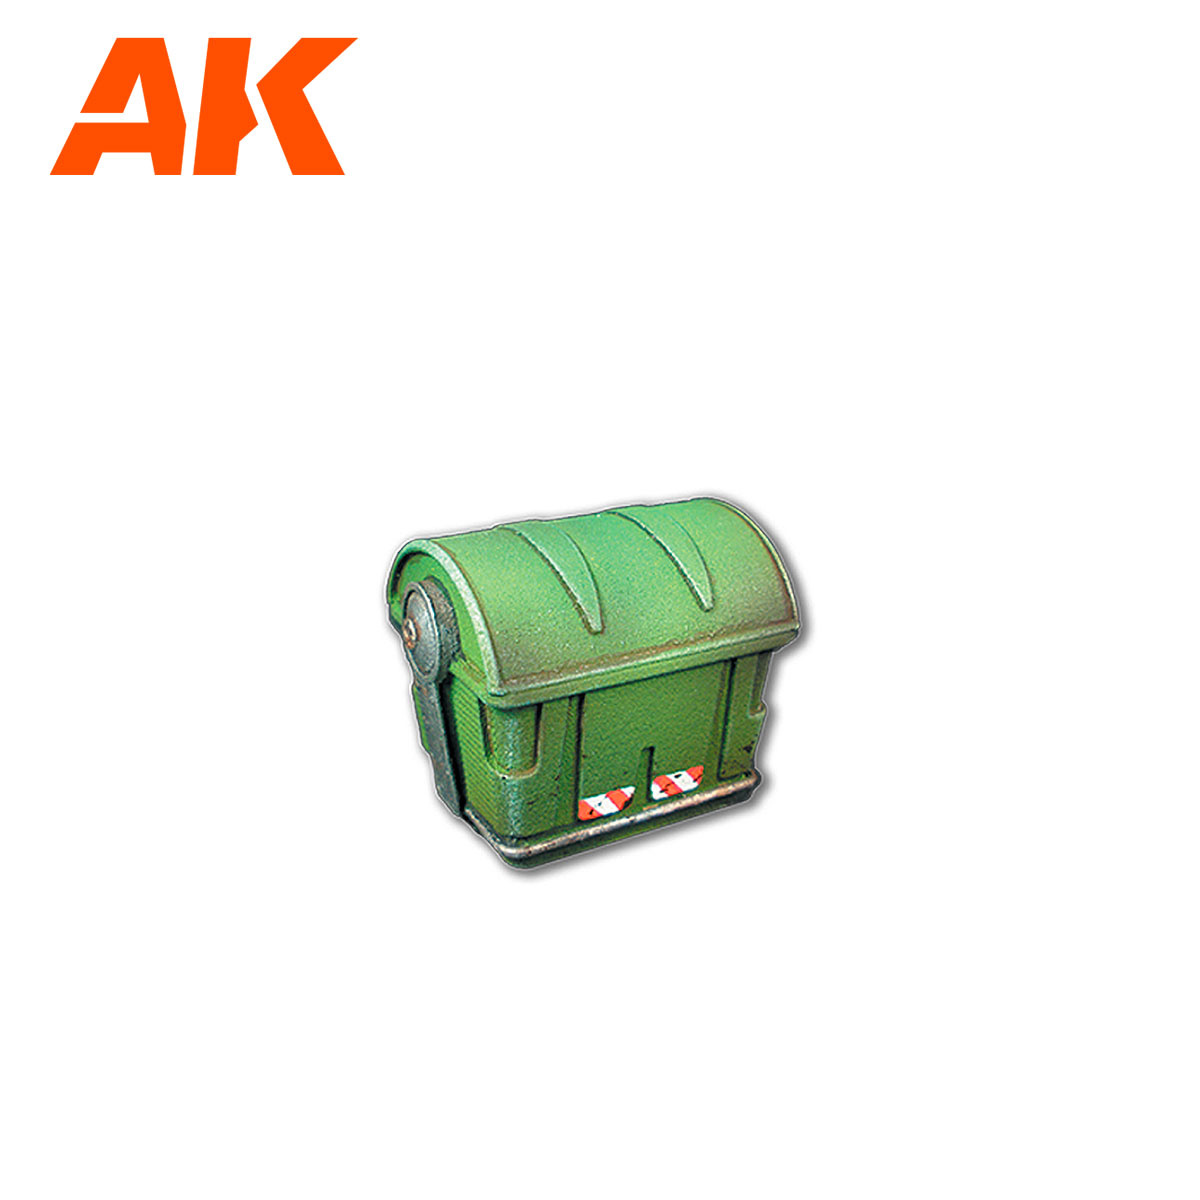 AK-Interactive Trashbins Scenography Wargame Set (30-35mm) - AK-Interactive - AK-1362